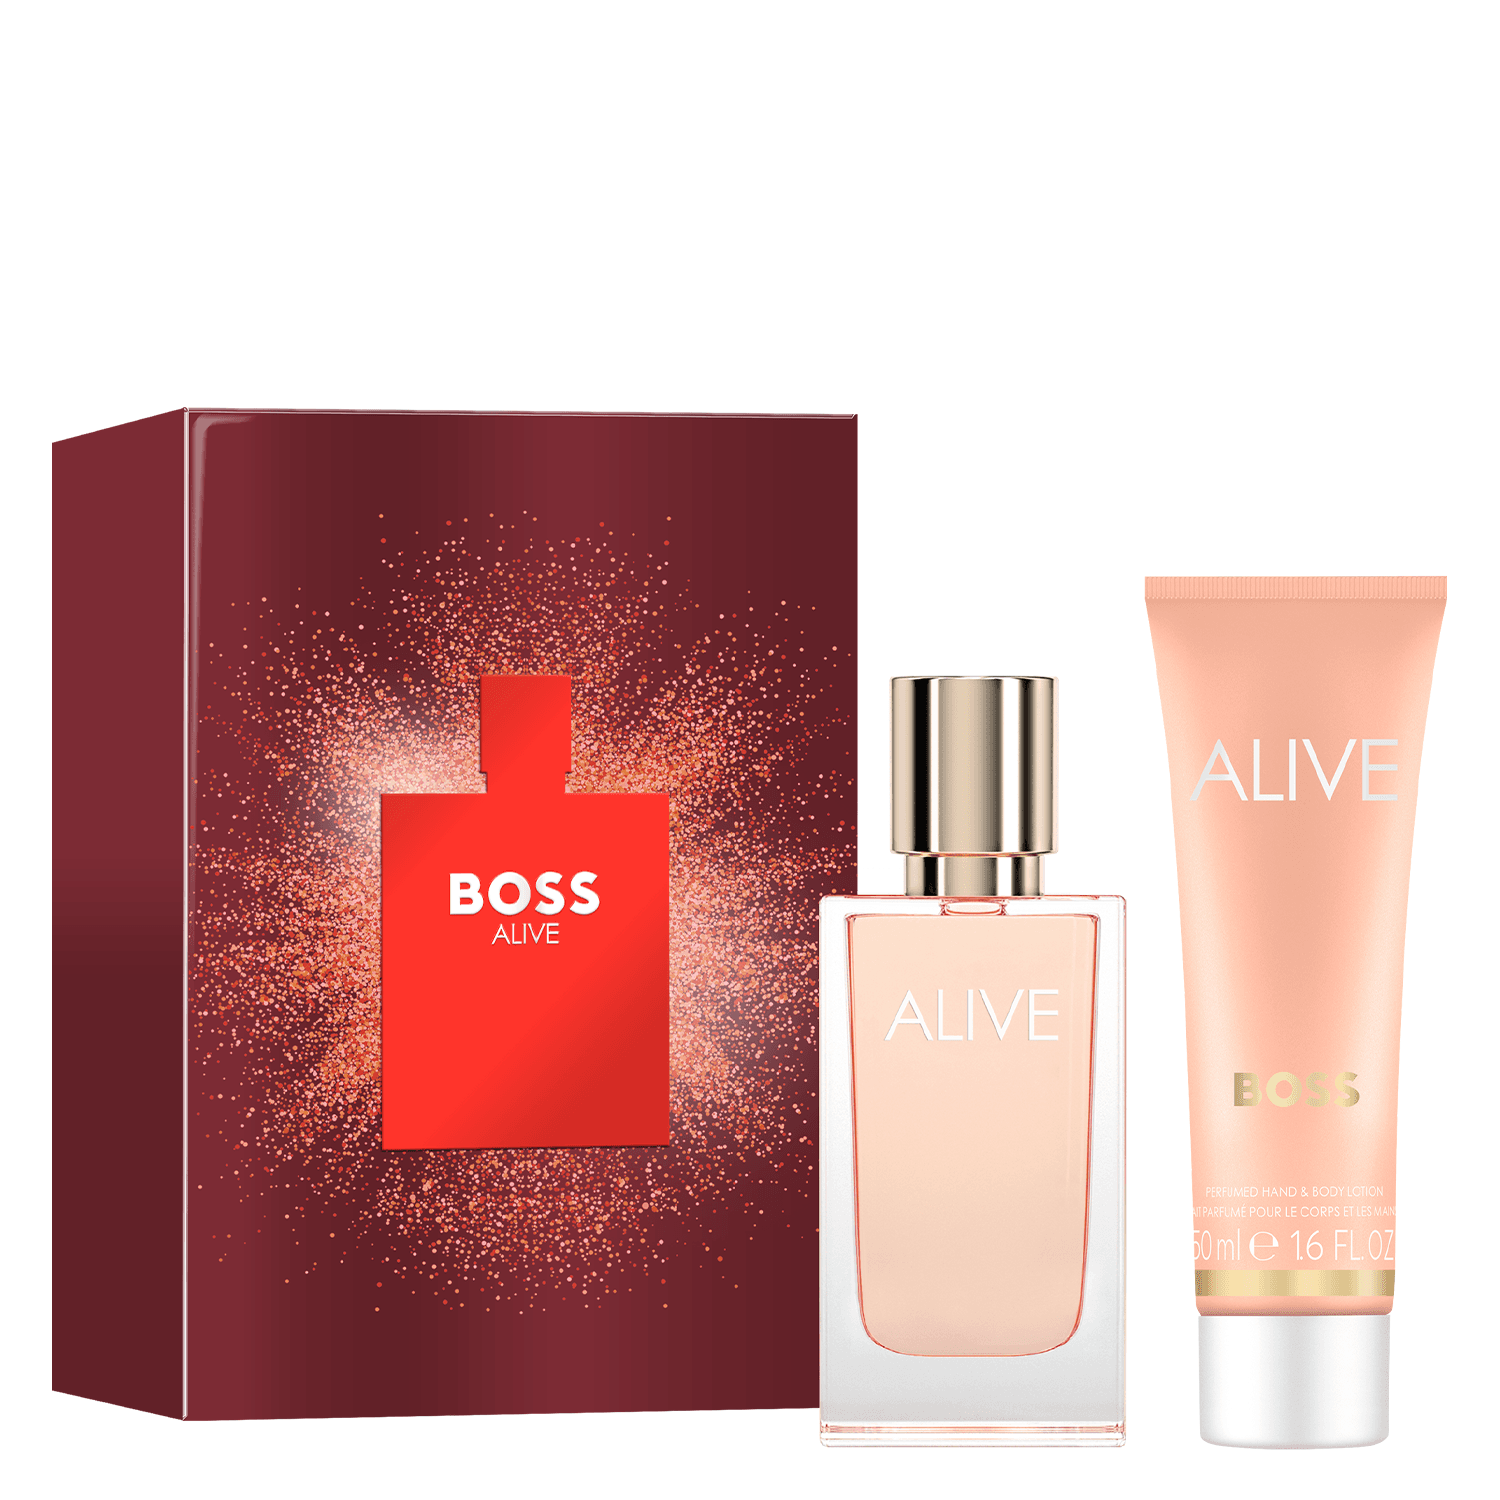 Boss Alive - Eau de Parfum Kit